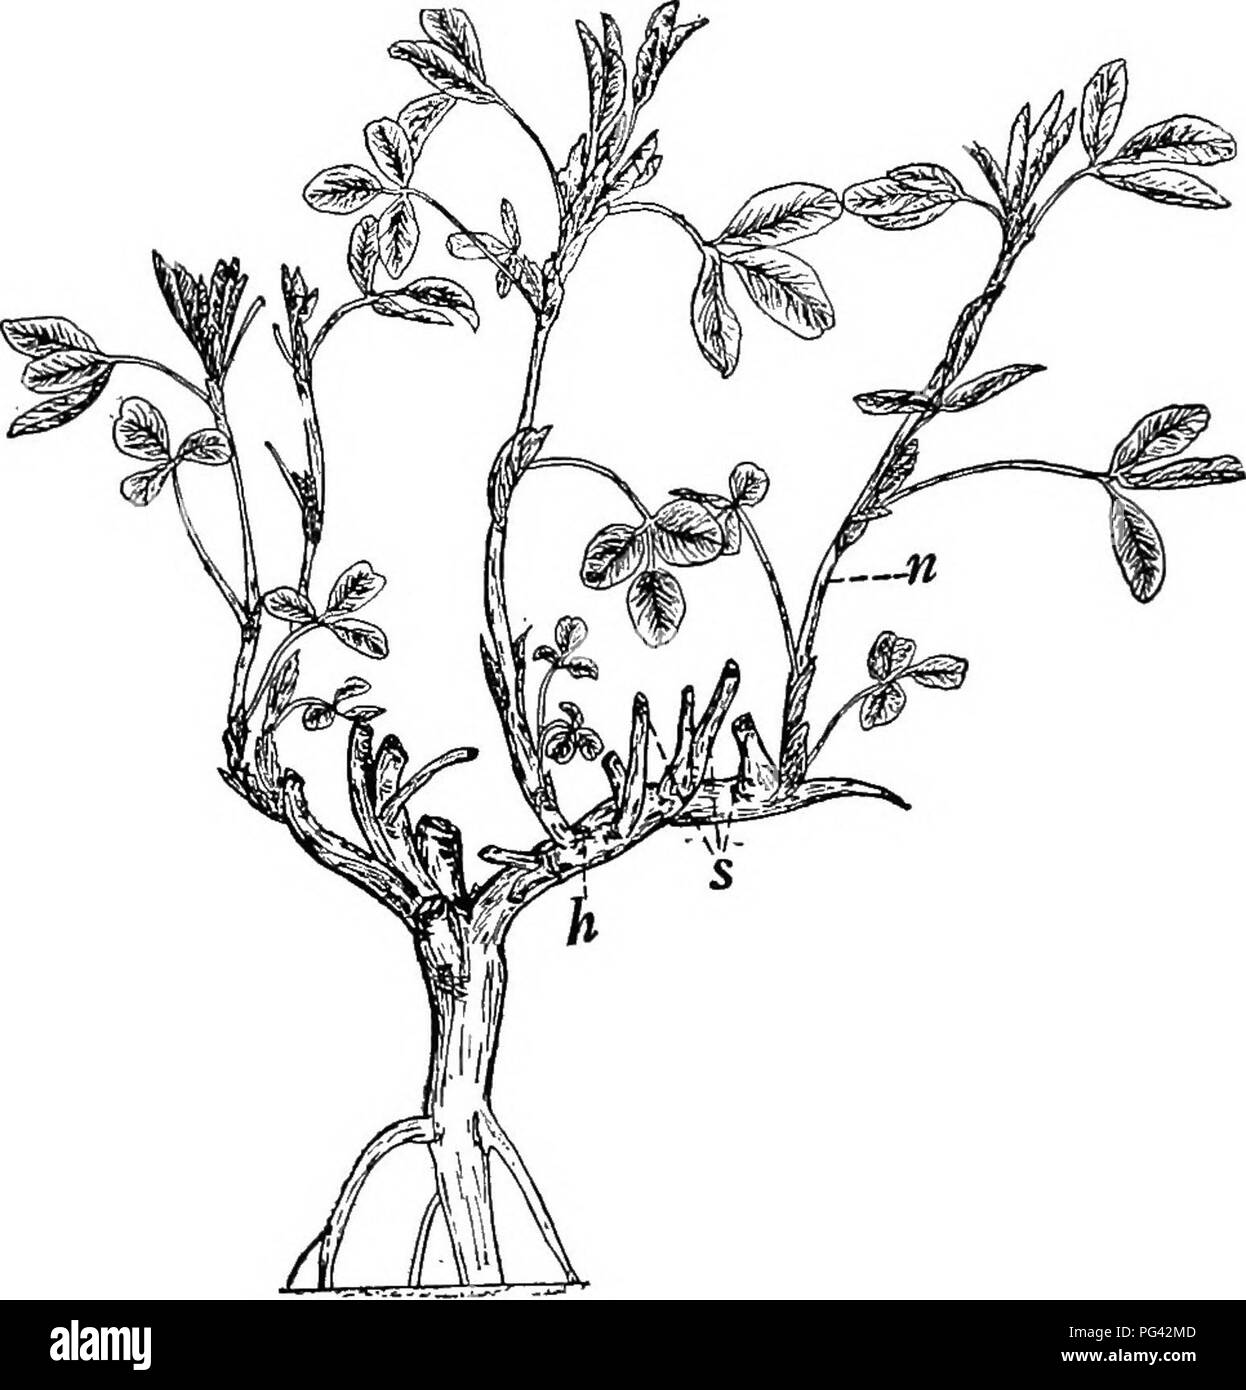 . Botanik für landwirtschaftliche Studenten. Botanik. Bildung von 15 UDS 209 eine Studie über die Entwicklung der Knospen unserer Obstbäume hat gezeigt, dass die Teile einer Knospe im Sommer und Herbst gebildet werden und sind oft so gut vor Frost entwickelt ist, dass die Blüten und Blätter können identifiziert werden, wenn Teile der Knospen sind. Abb. 189. - Luzerne Pflanze, die Entwicklung von Herstellungsverfahren auf der Krone. /;, Ein hauptzweig der Krone; s, stümpfe von Zweigniederlassungen, die gemäht wurden; n, neue Filialen. Mit dem Mikroskop untersucht. Damit der Charakter oder Inhalt der Knospen unserer Obstbäume wird ermittelt Stockfoto